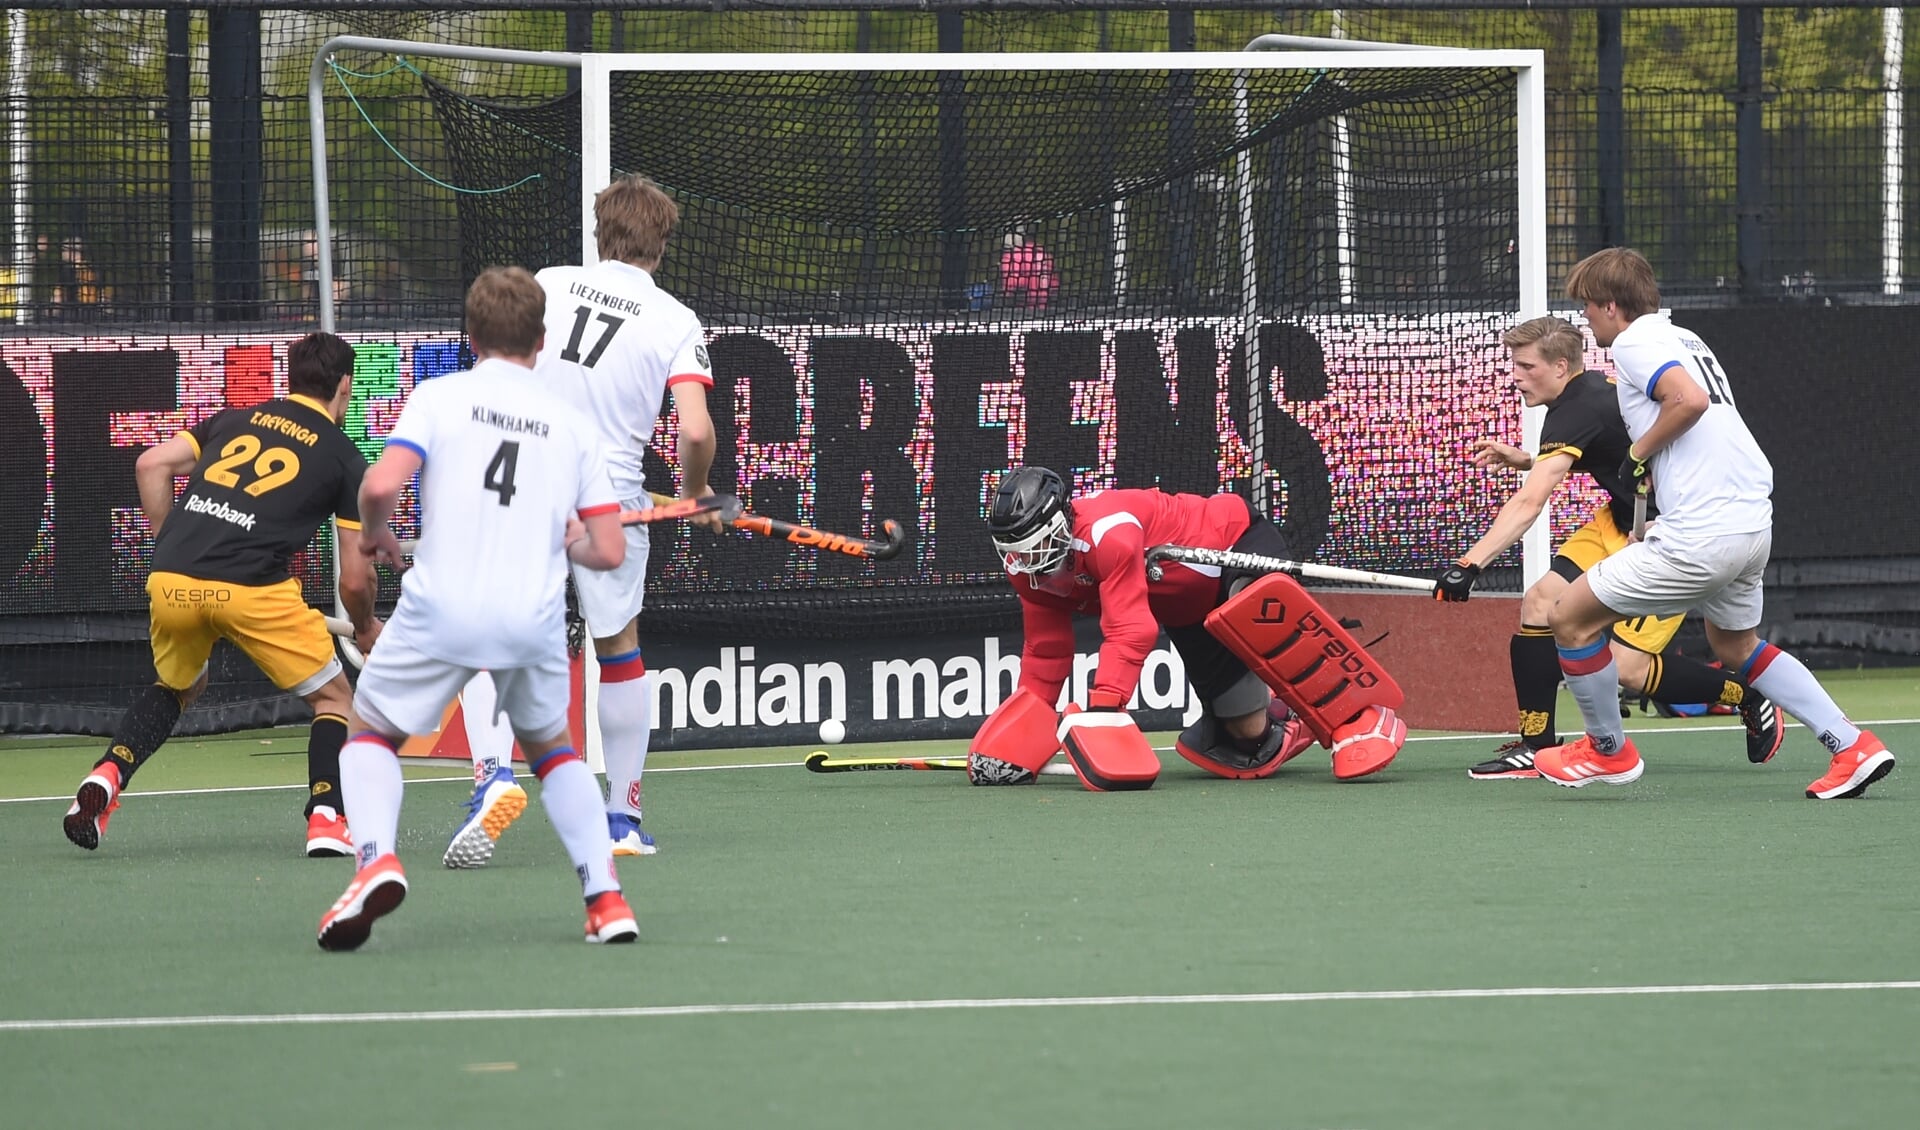 HC Den Bosch-speler Tijmen Reijenga zet in de 52e minuut de 4-0 op het scorebord. (Foto: Henk van Esch)